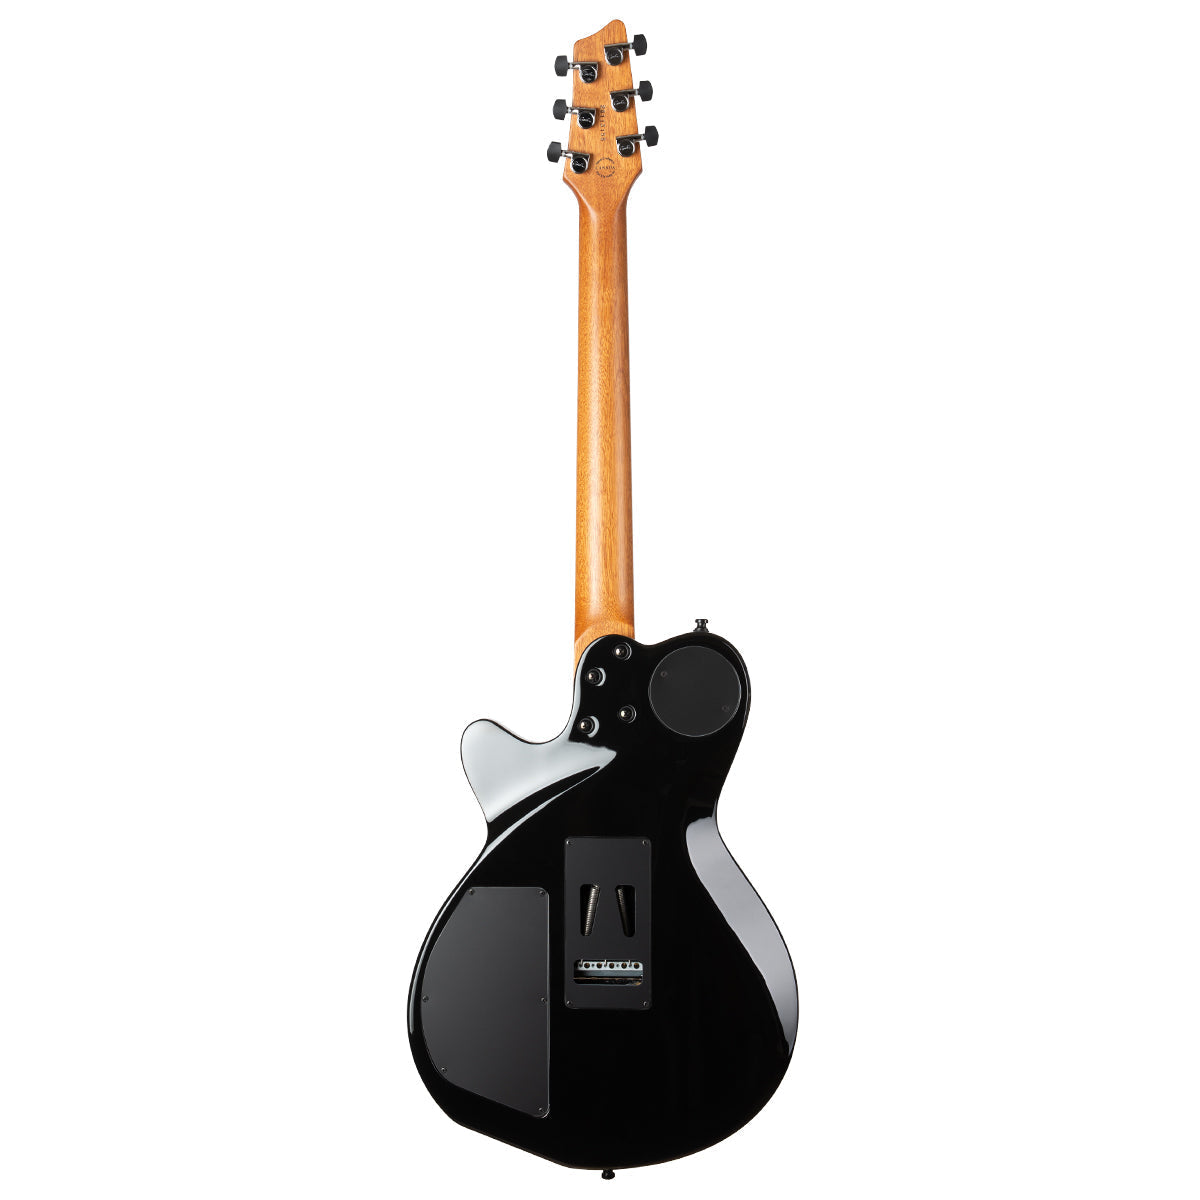 Godin XTSA 3 Voice Electric Guitar ~ Trans Black Flame, Electric Guitar for sale at Richards Guitars.